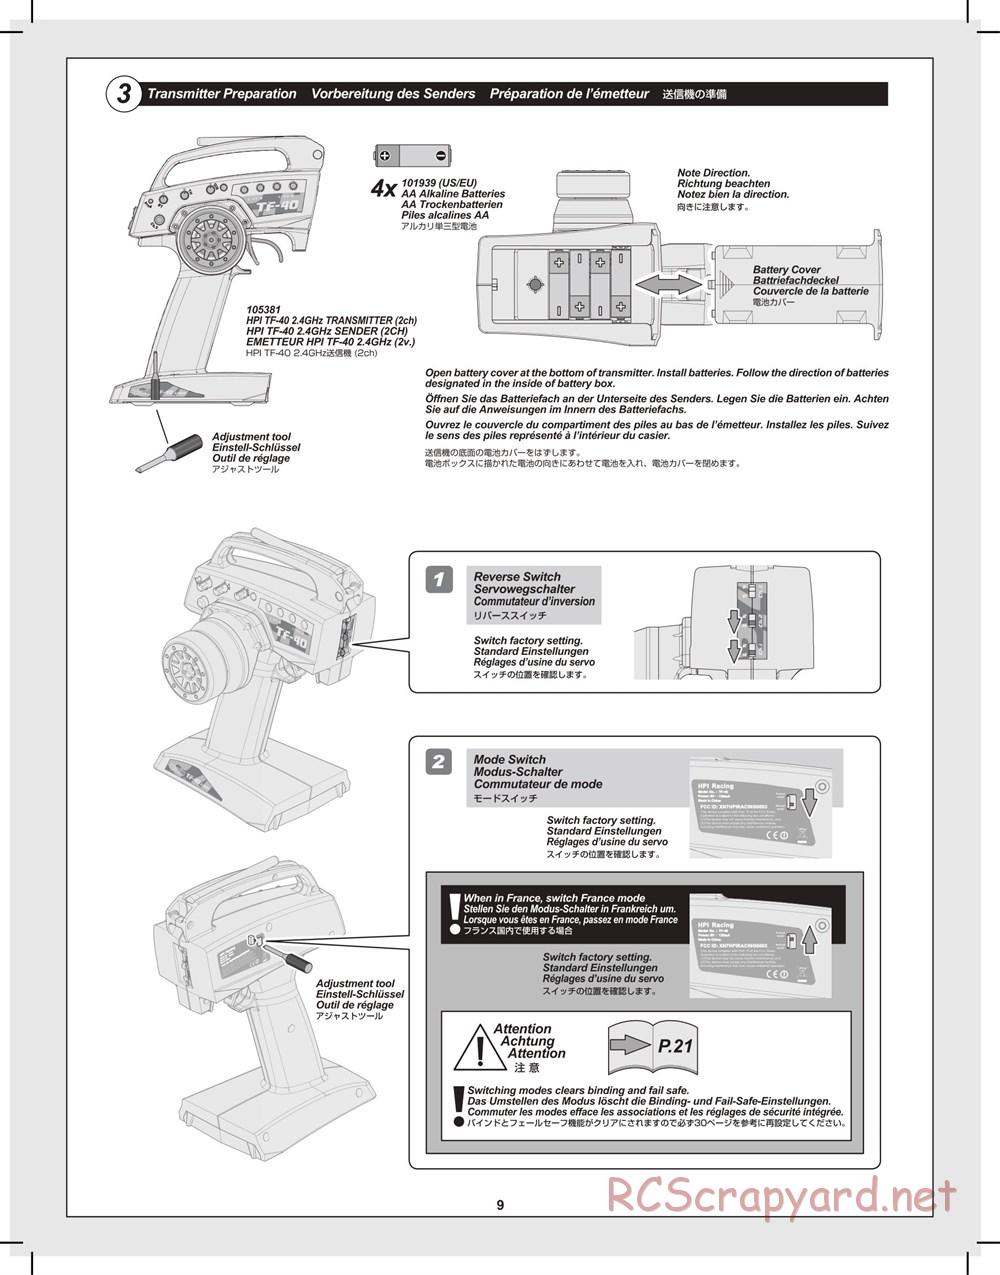 HPI - Mini Recon - Manual - Page 9